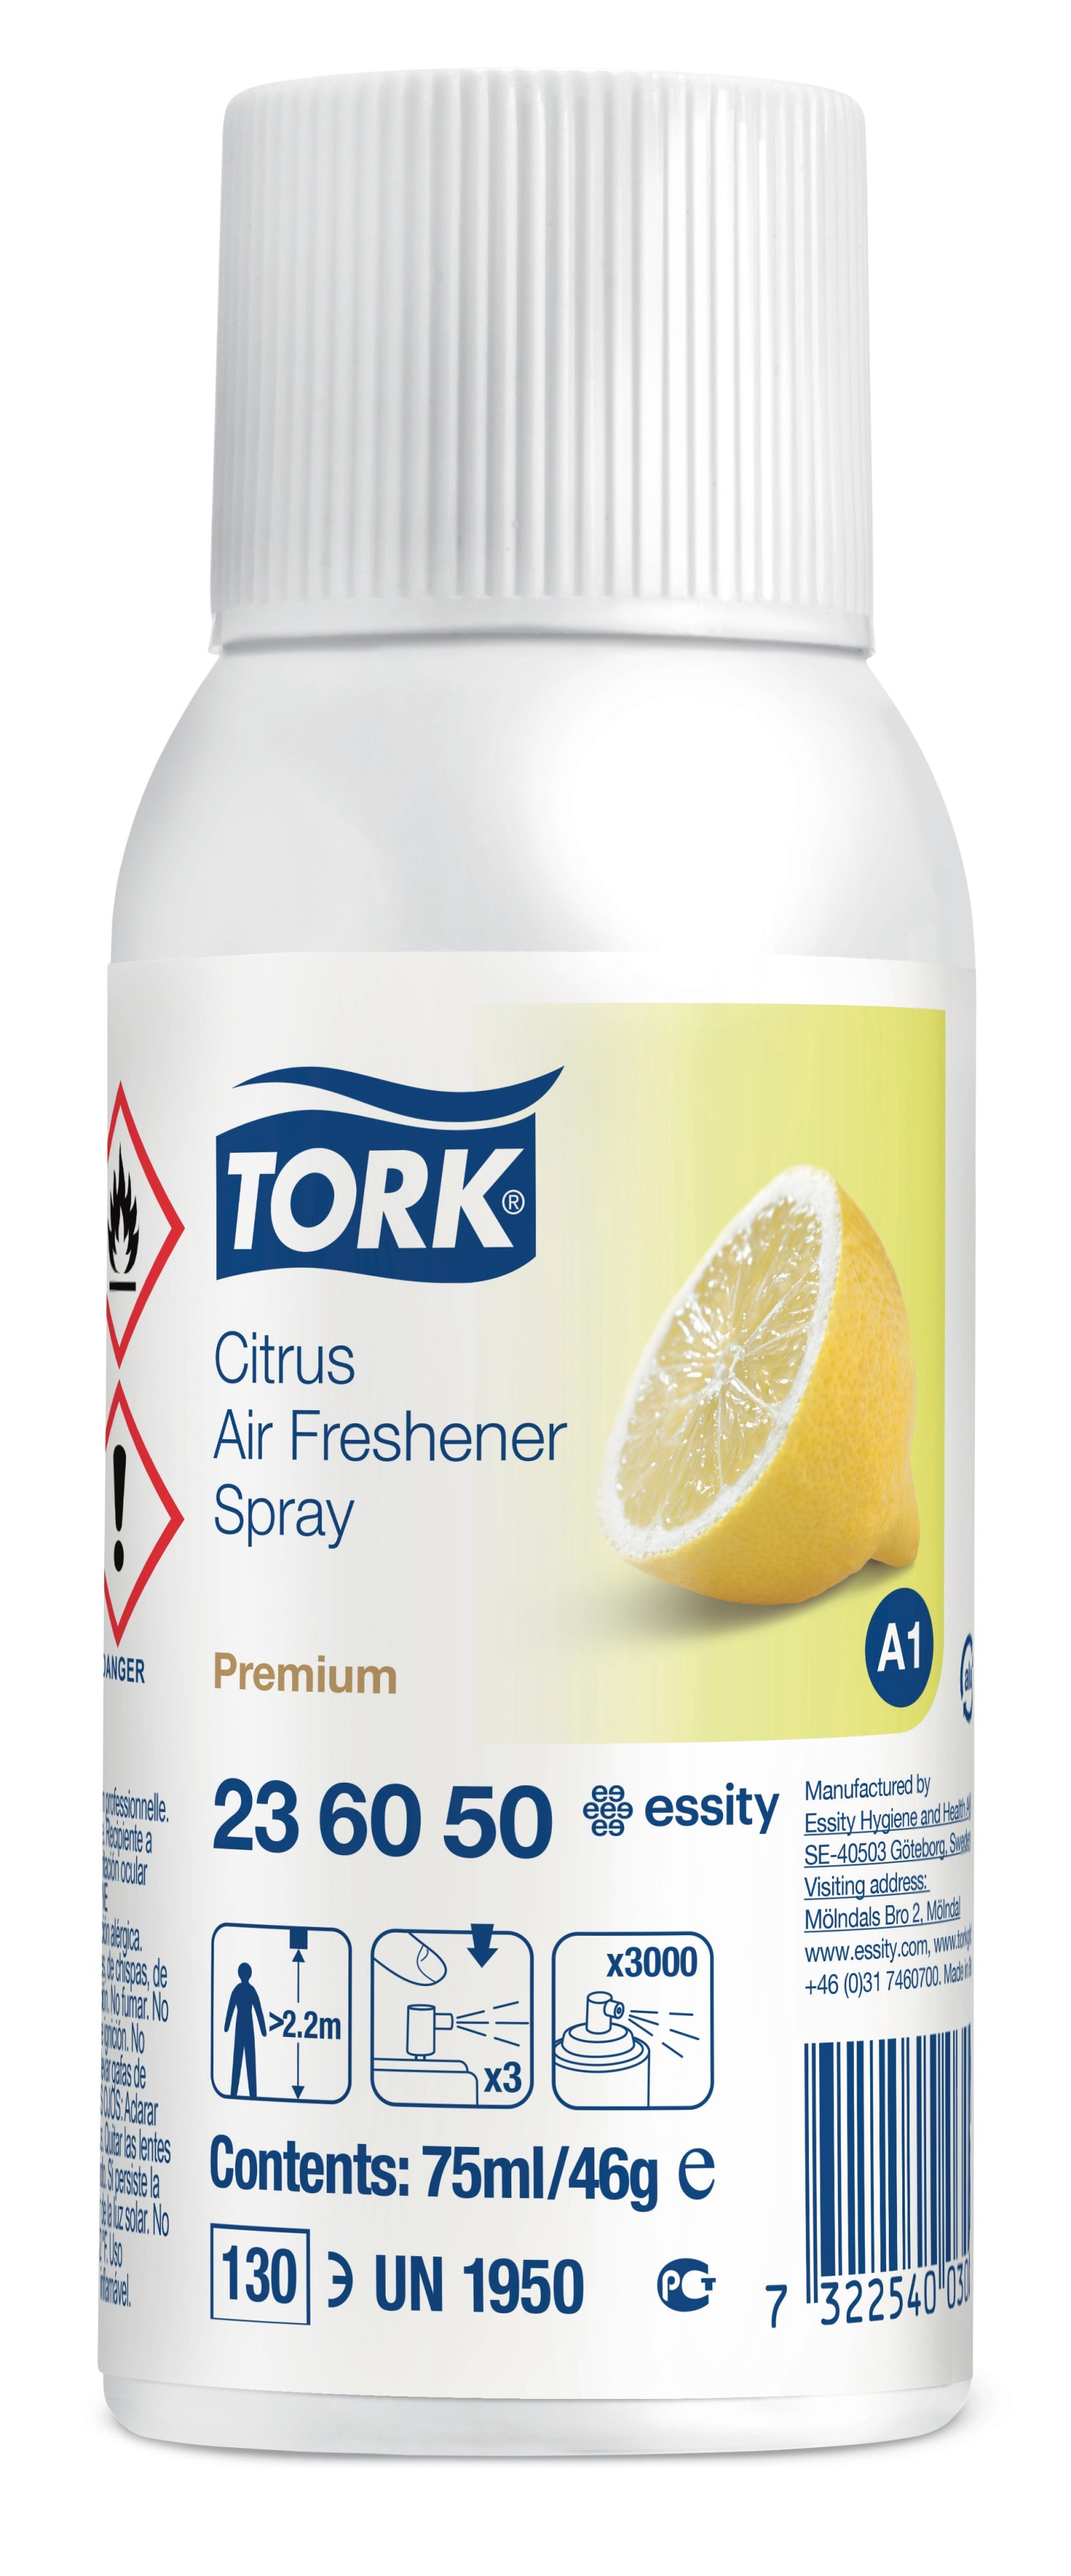 Se TORK Airfreshener A1 Citrus 12 stk Refill (236050) hos BLITE